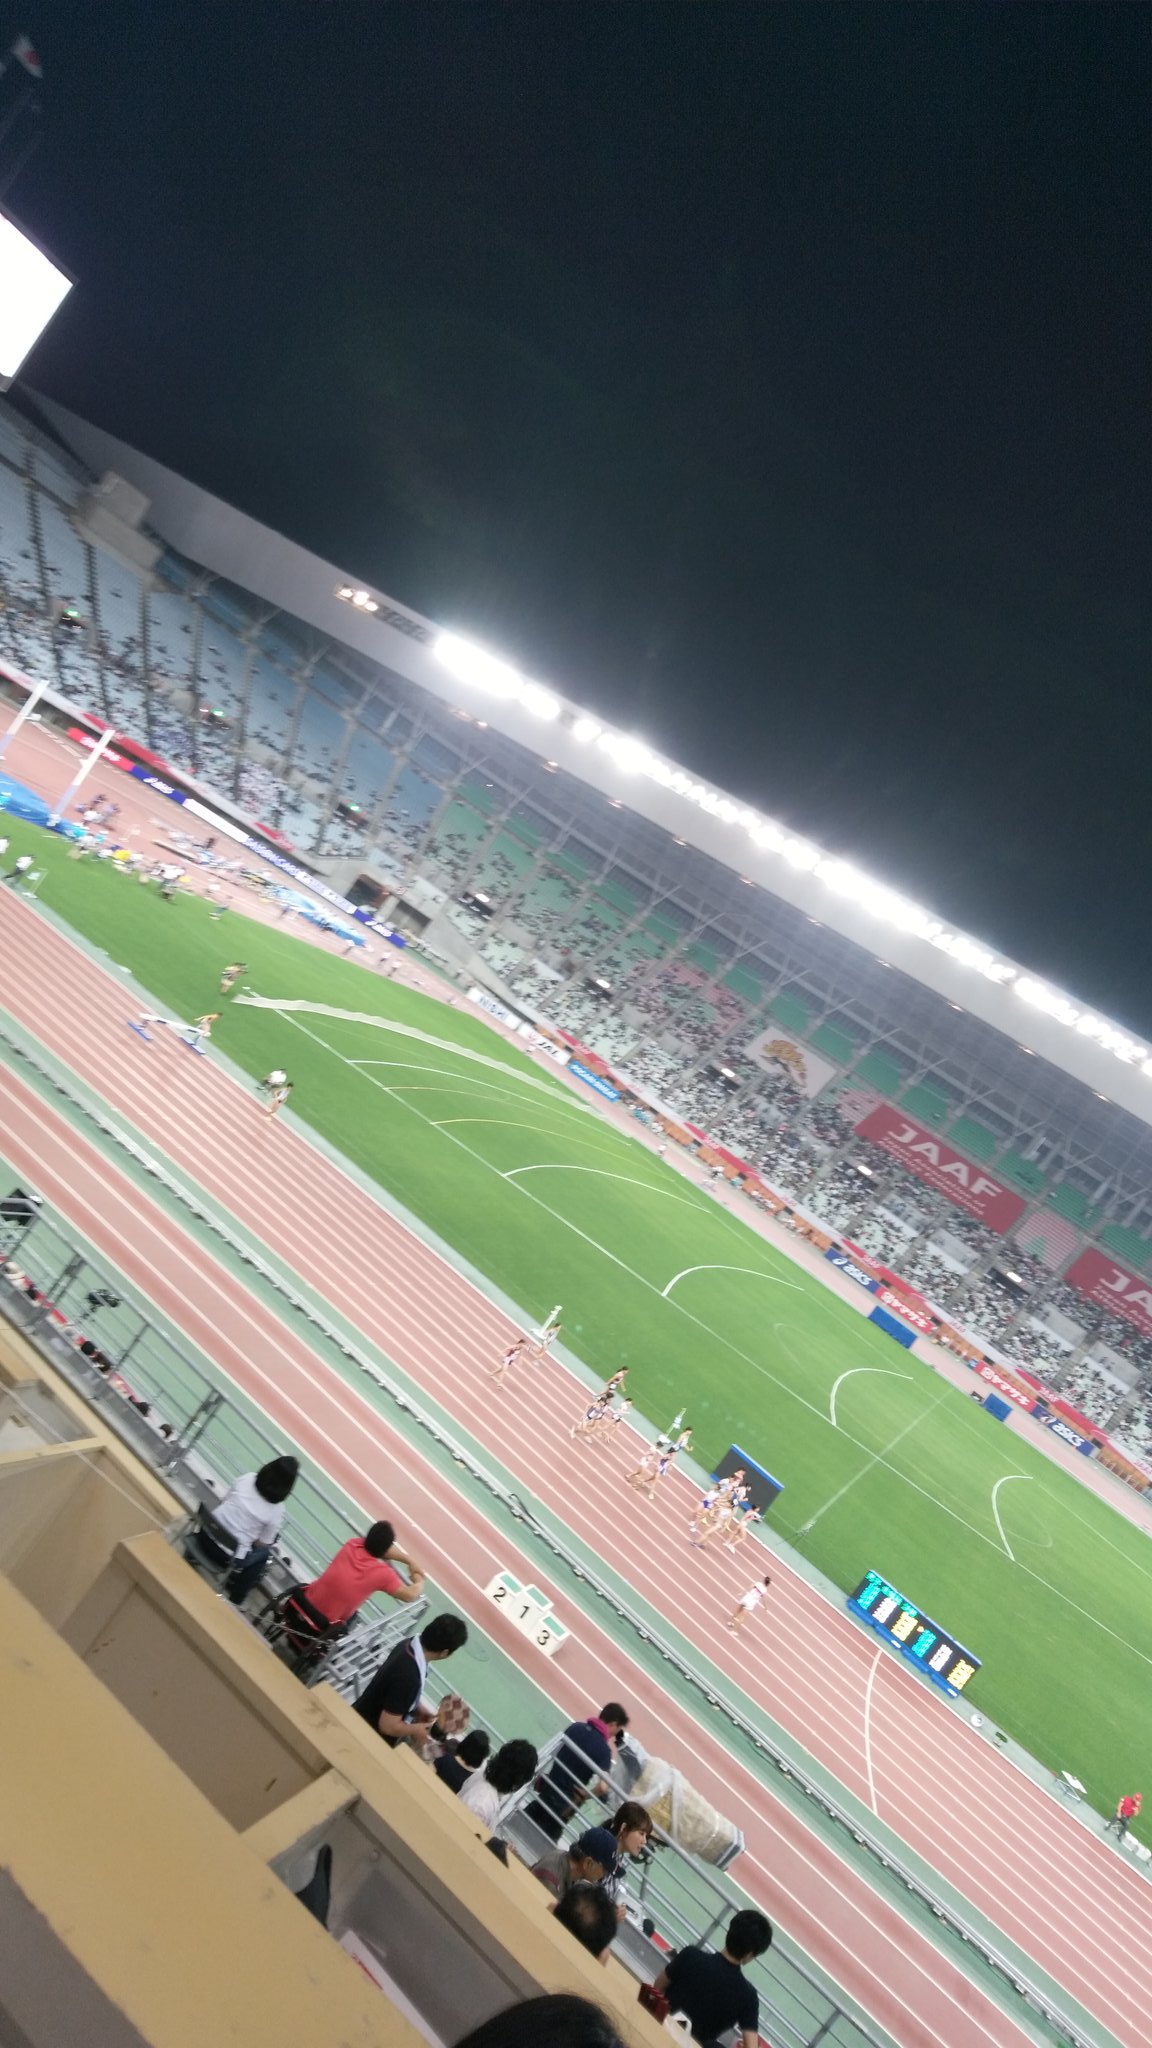 森脇健児 ナイター照明が選手を照らしてカッコいい 日本選手権陸上 長居陸上競技場はまもなく男子100メートル決勝 T Co 0wa3al7x4g Twitter